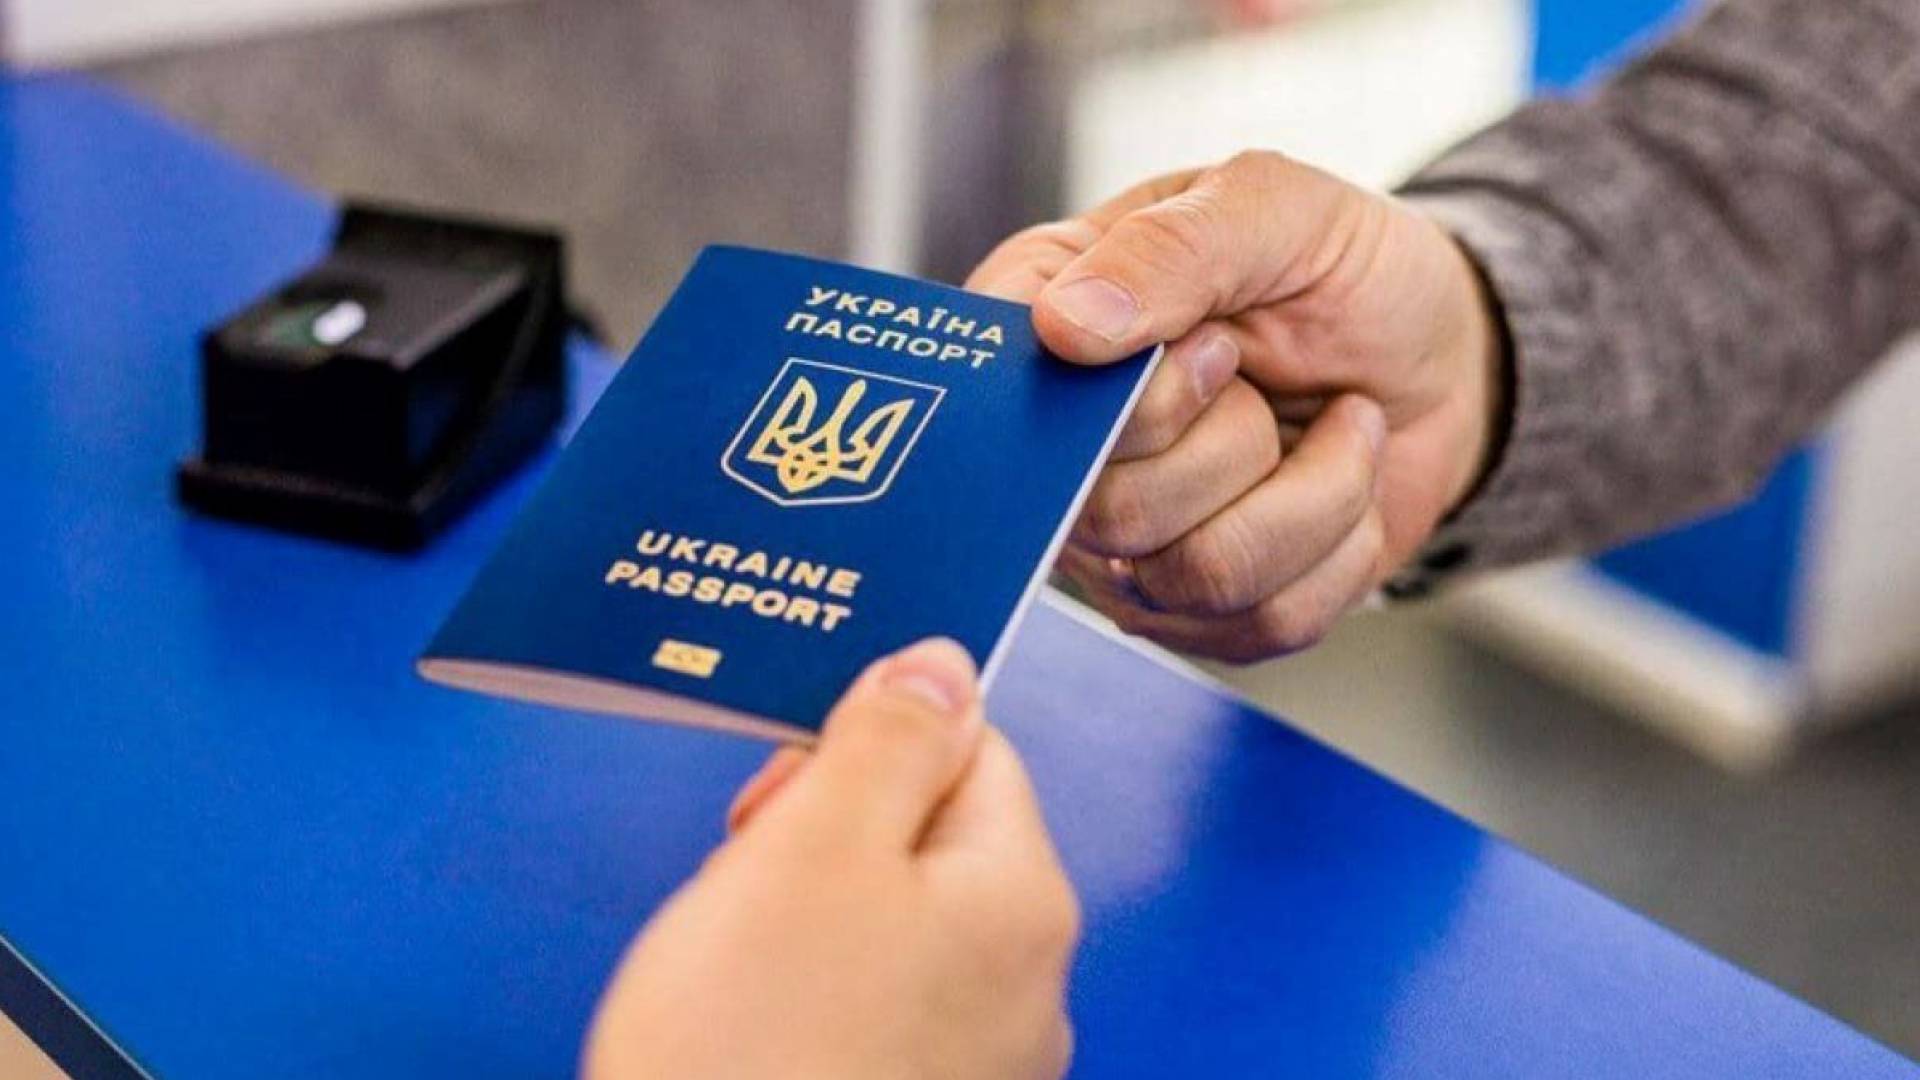 паспорт громадянина України